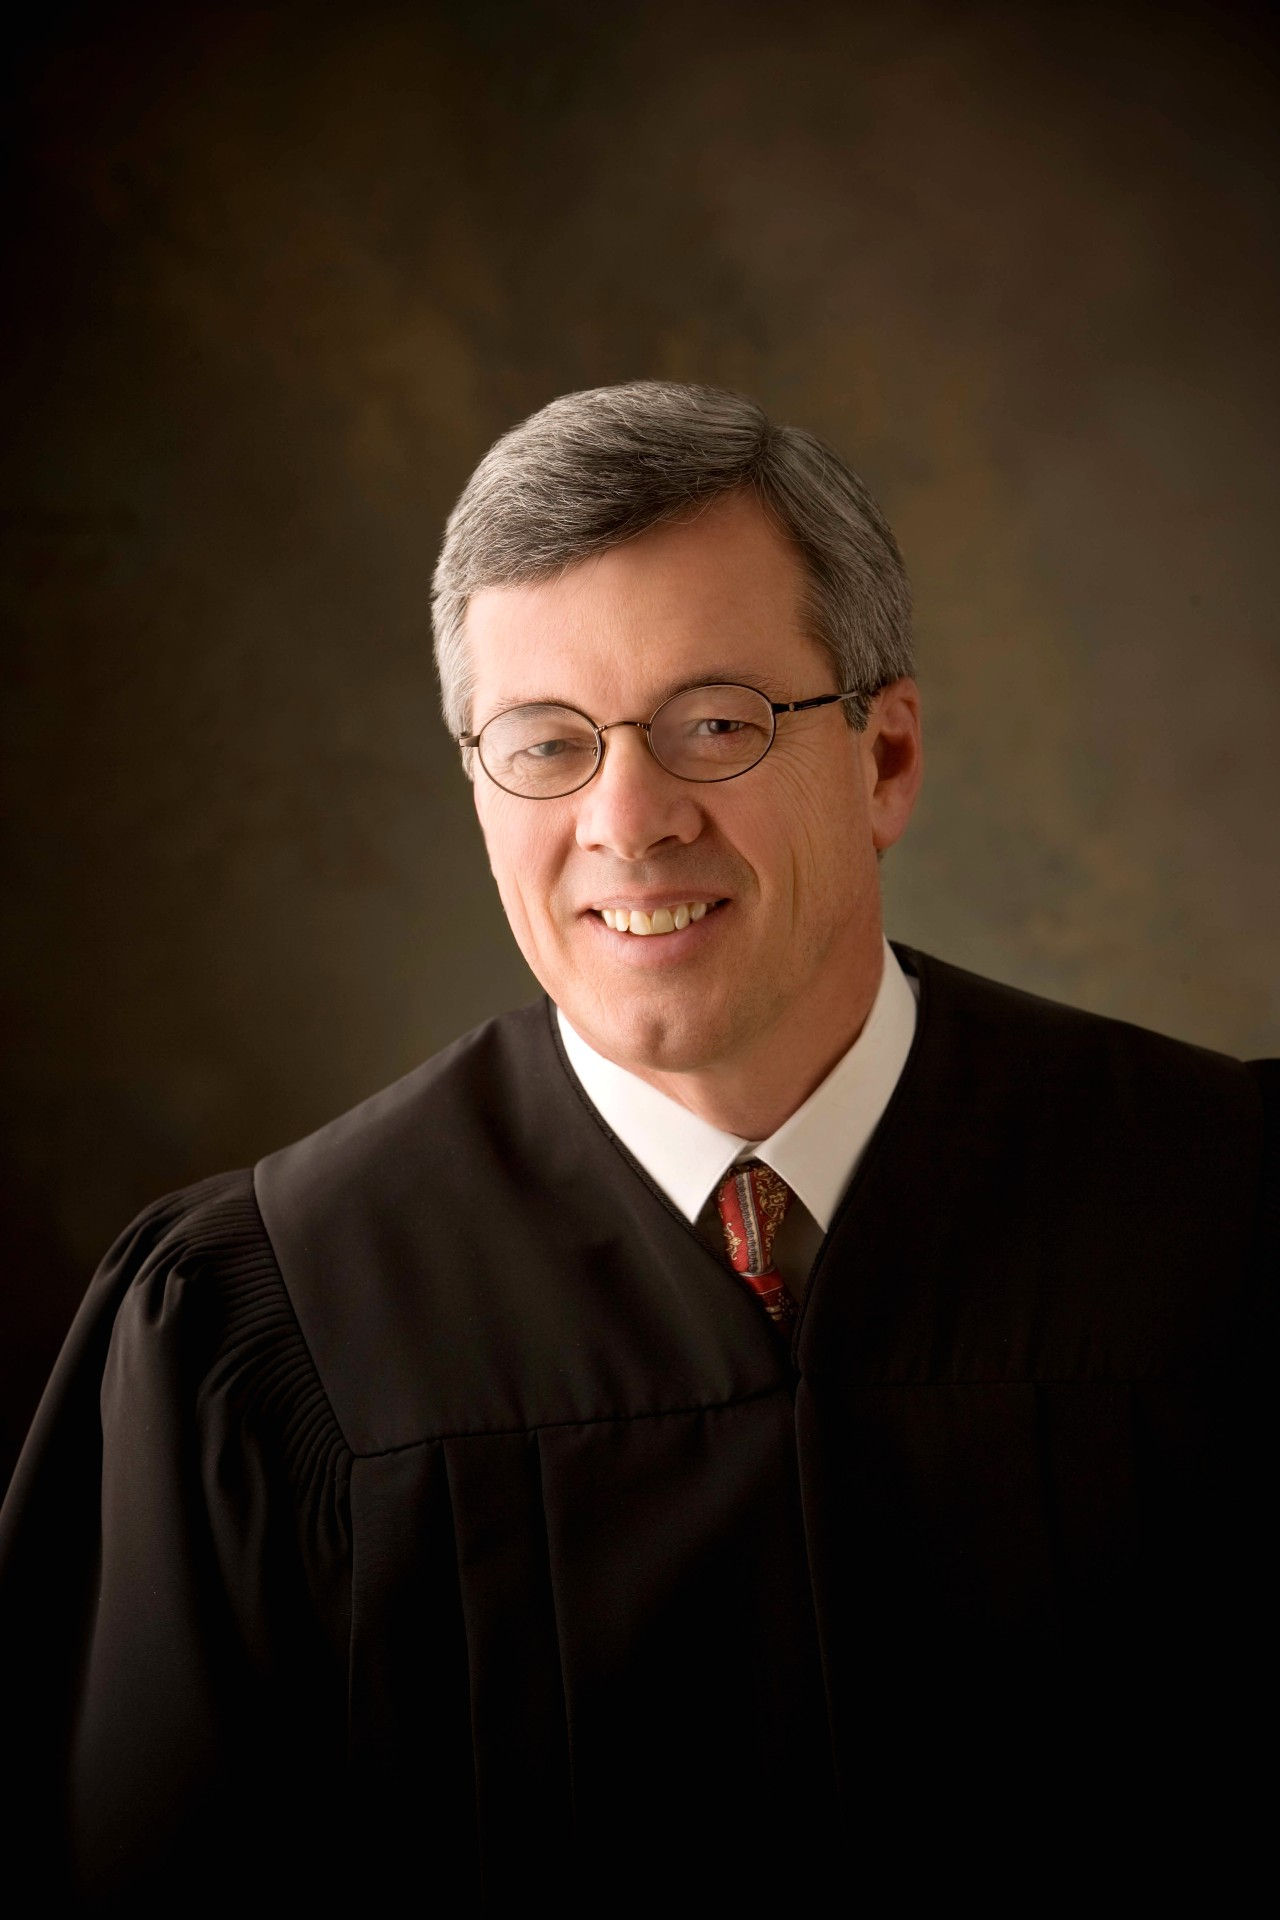 JUDGE DAVID M. CONNORS